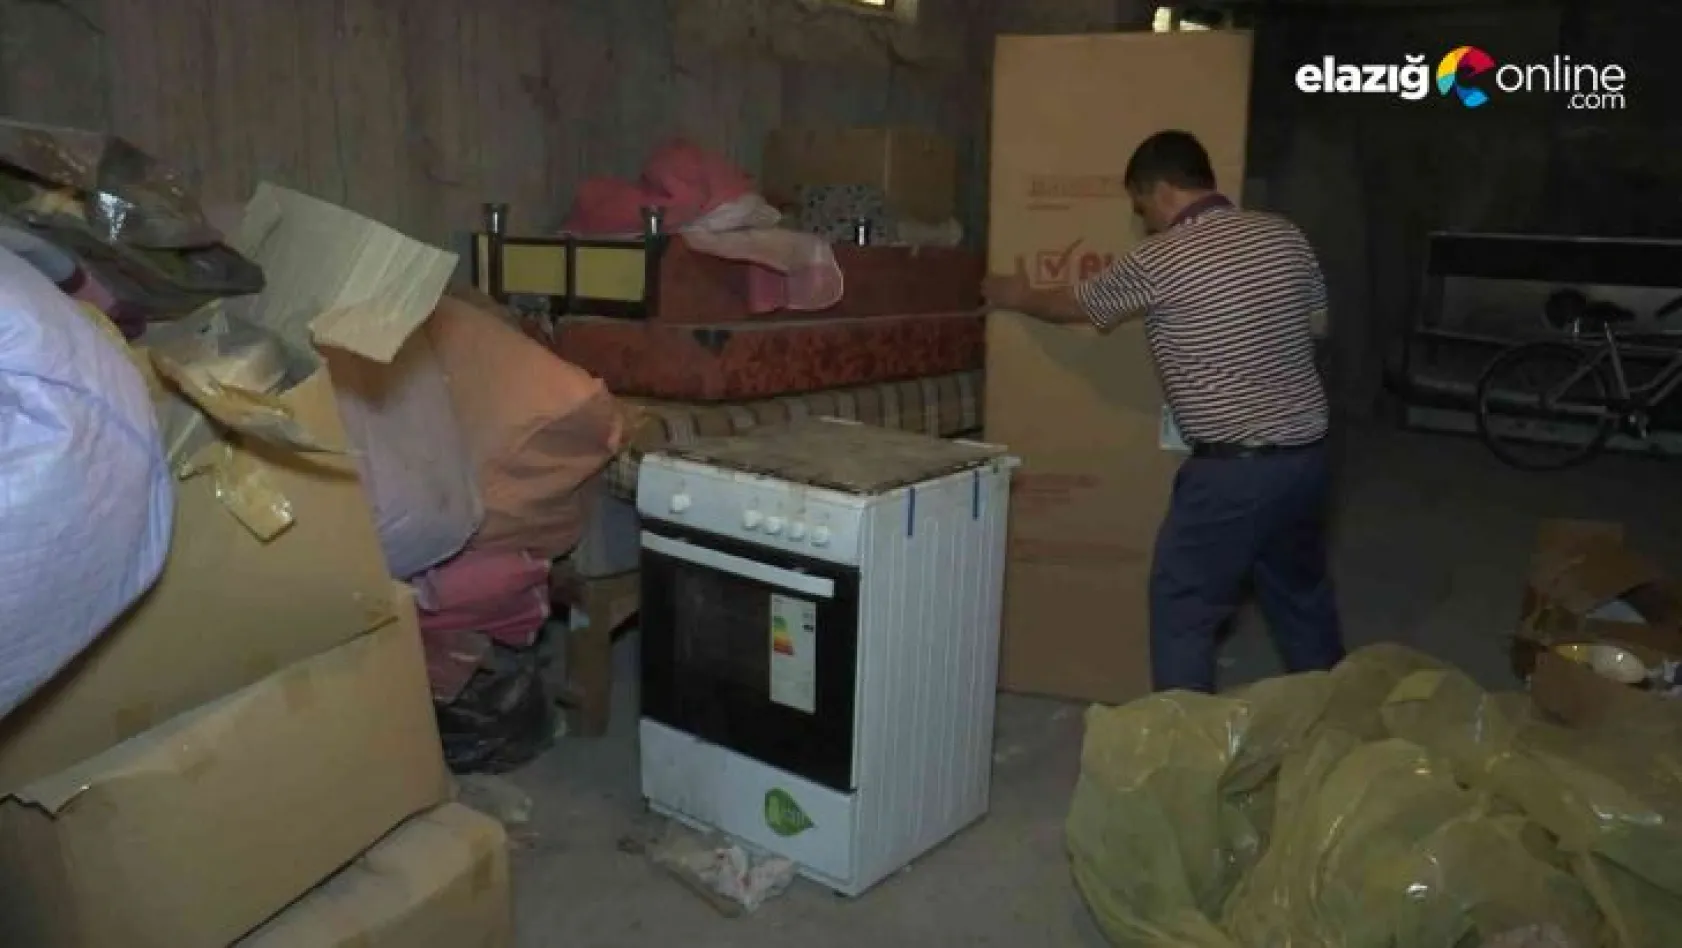 Elazığ'da filmlere konu olacak olay: Depremde emanet alınan eşyaların sahibini 2 yıldır arıyor